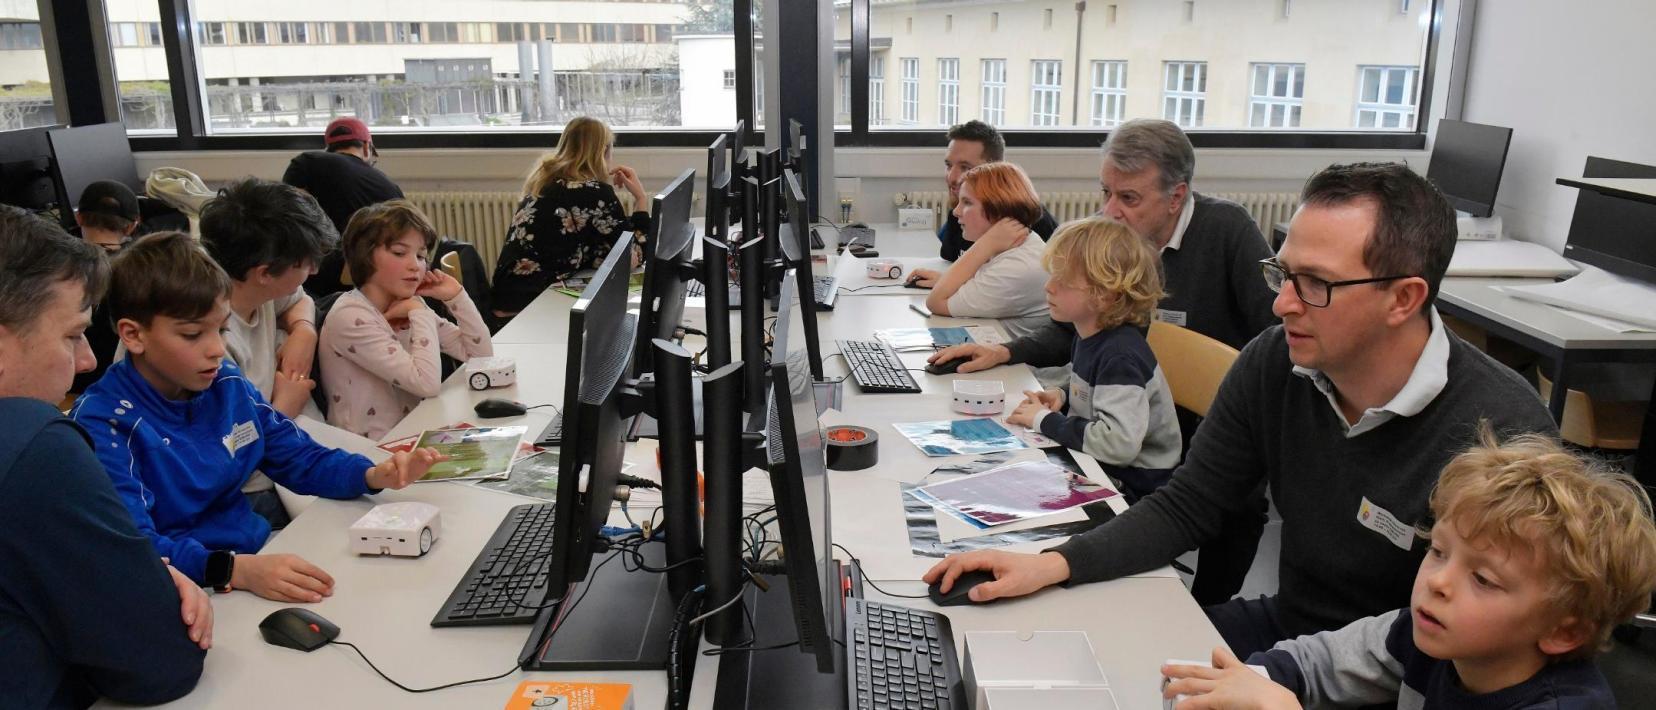 Erwachsene betreuen mehrere Kinder, die am Computer sitzen